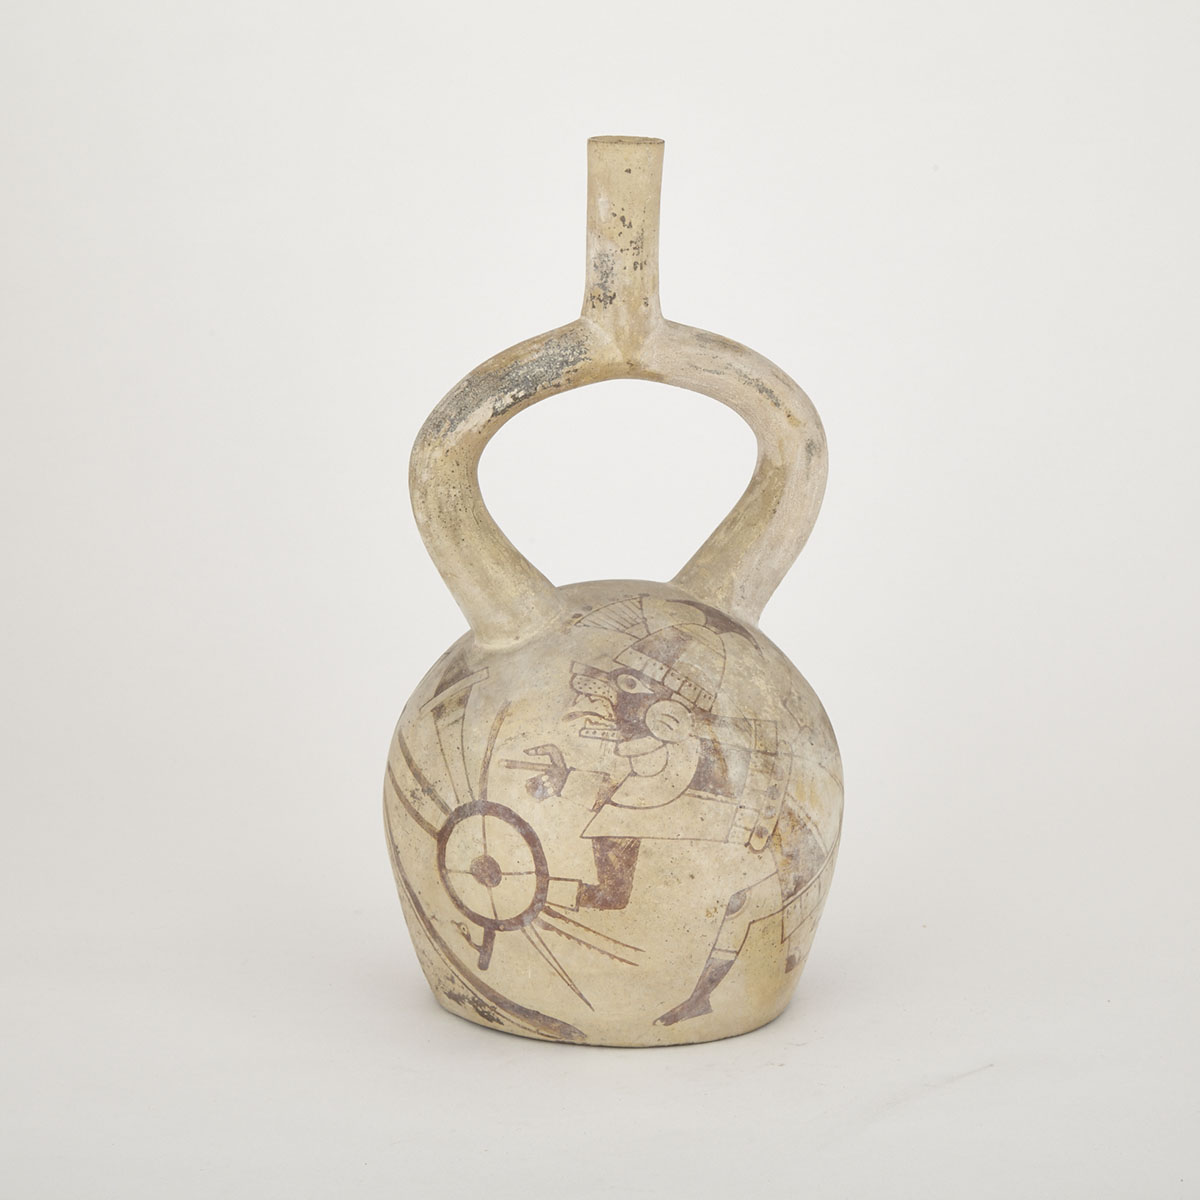 Middle Mochica Pottery Stirrup Spout Vessel, Peru, 400-600 A.D.